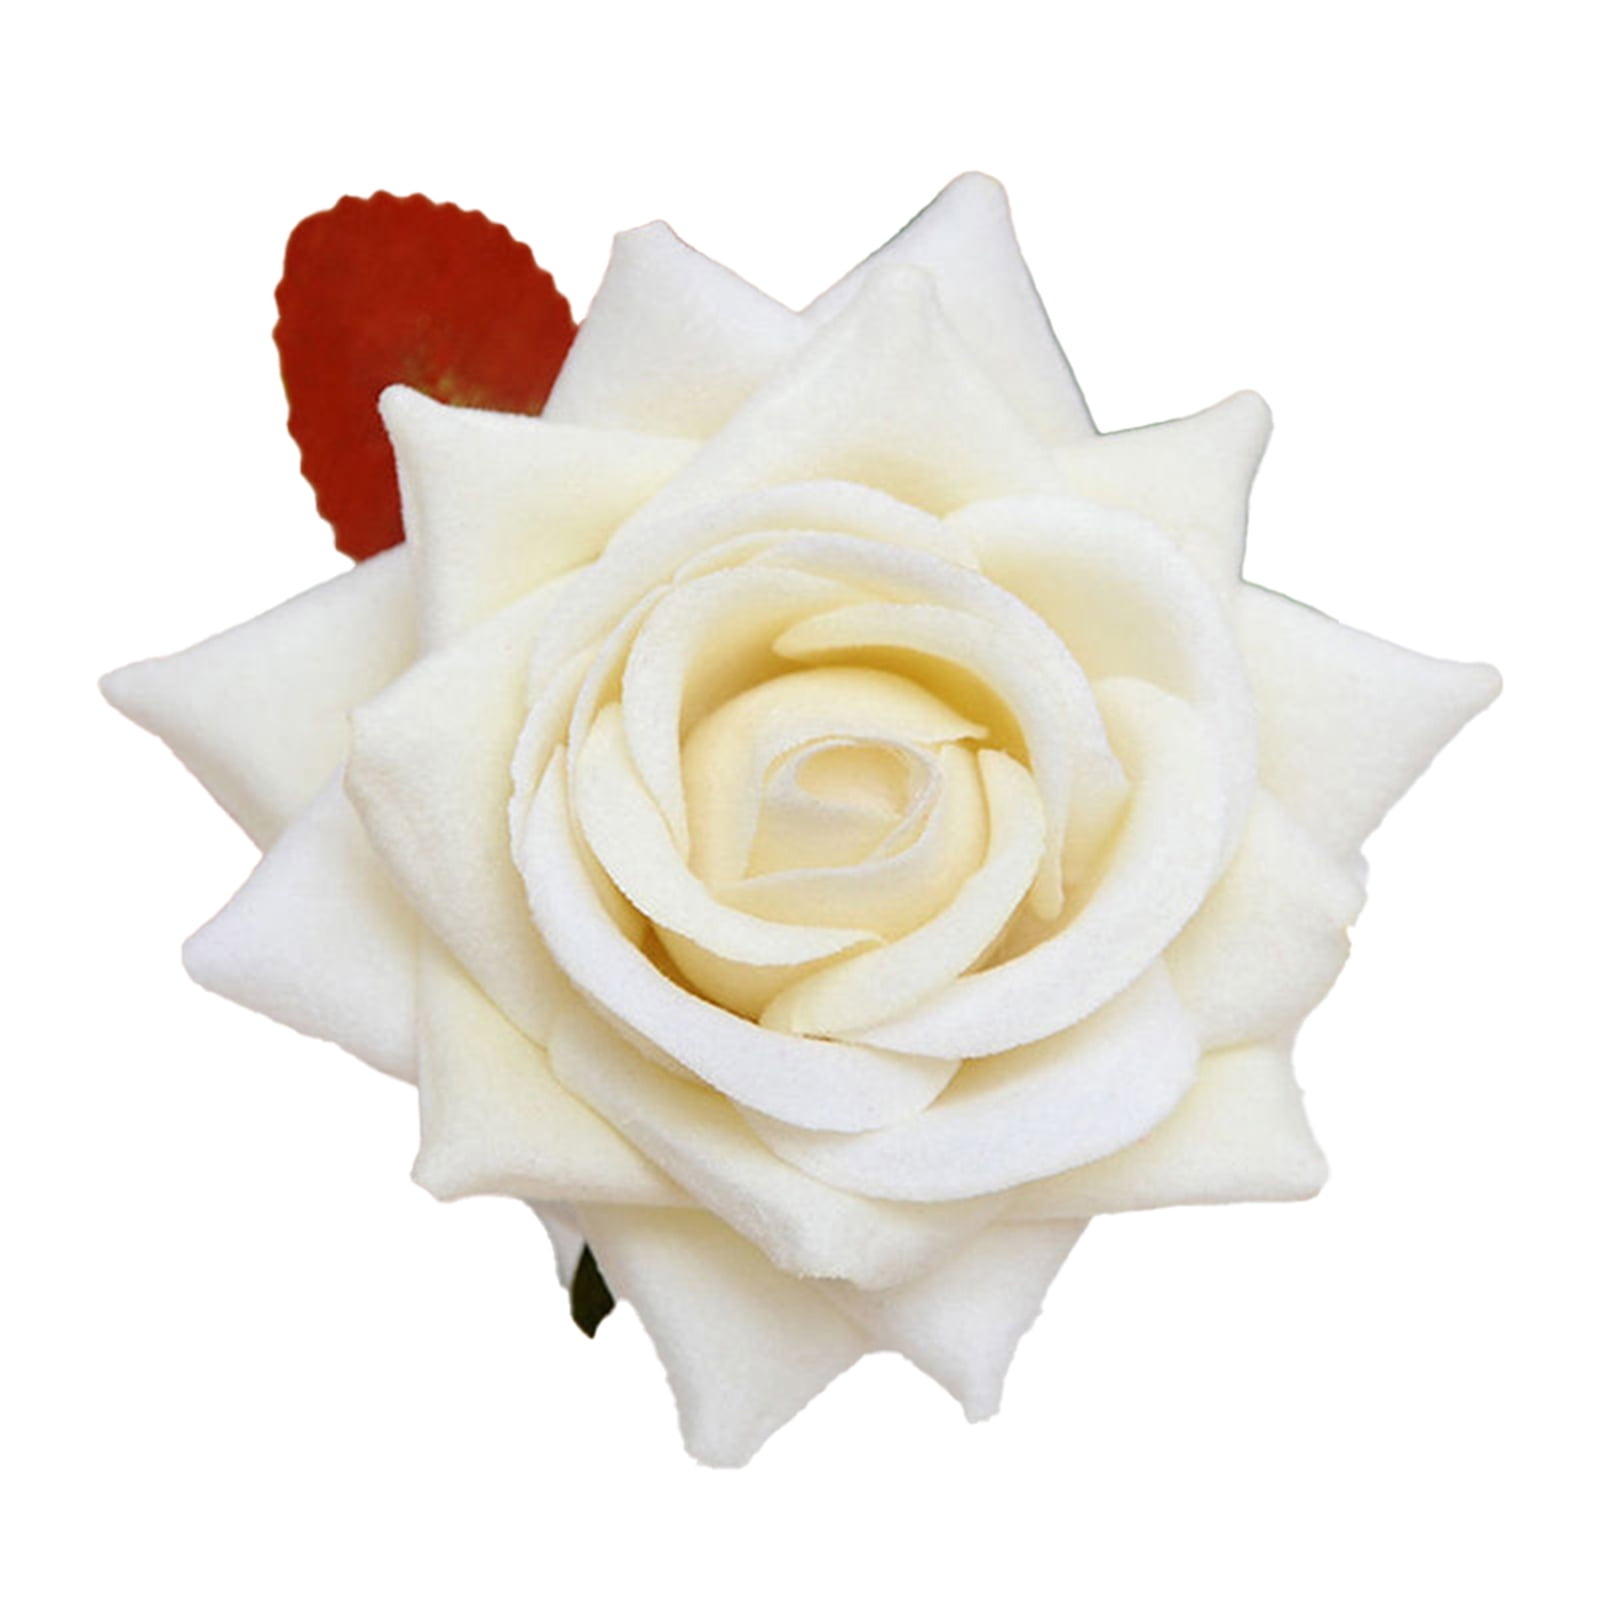 Details about   50pcs Artificial Flowers Foam Roses Fake Wedding Bride Bouquet Party Home Decor 